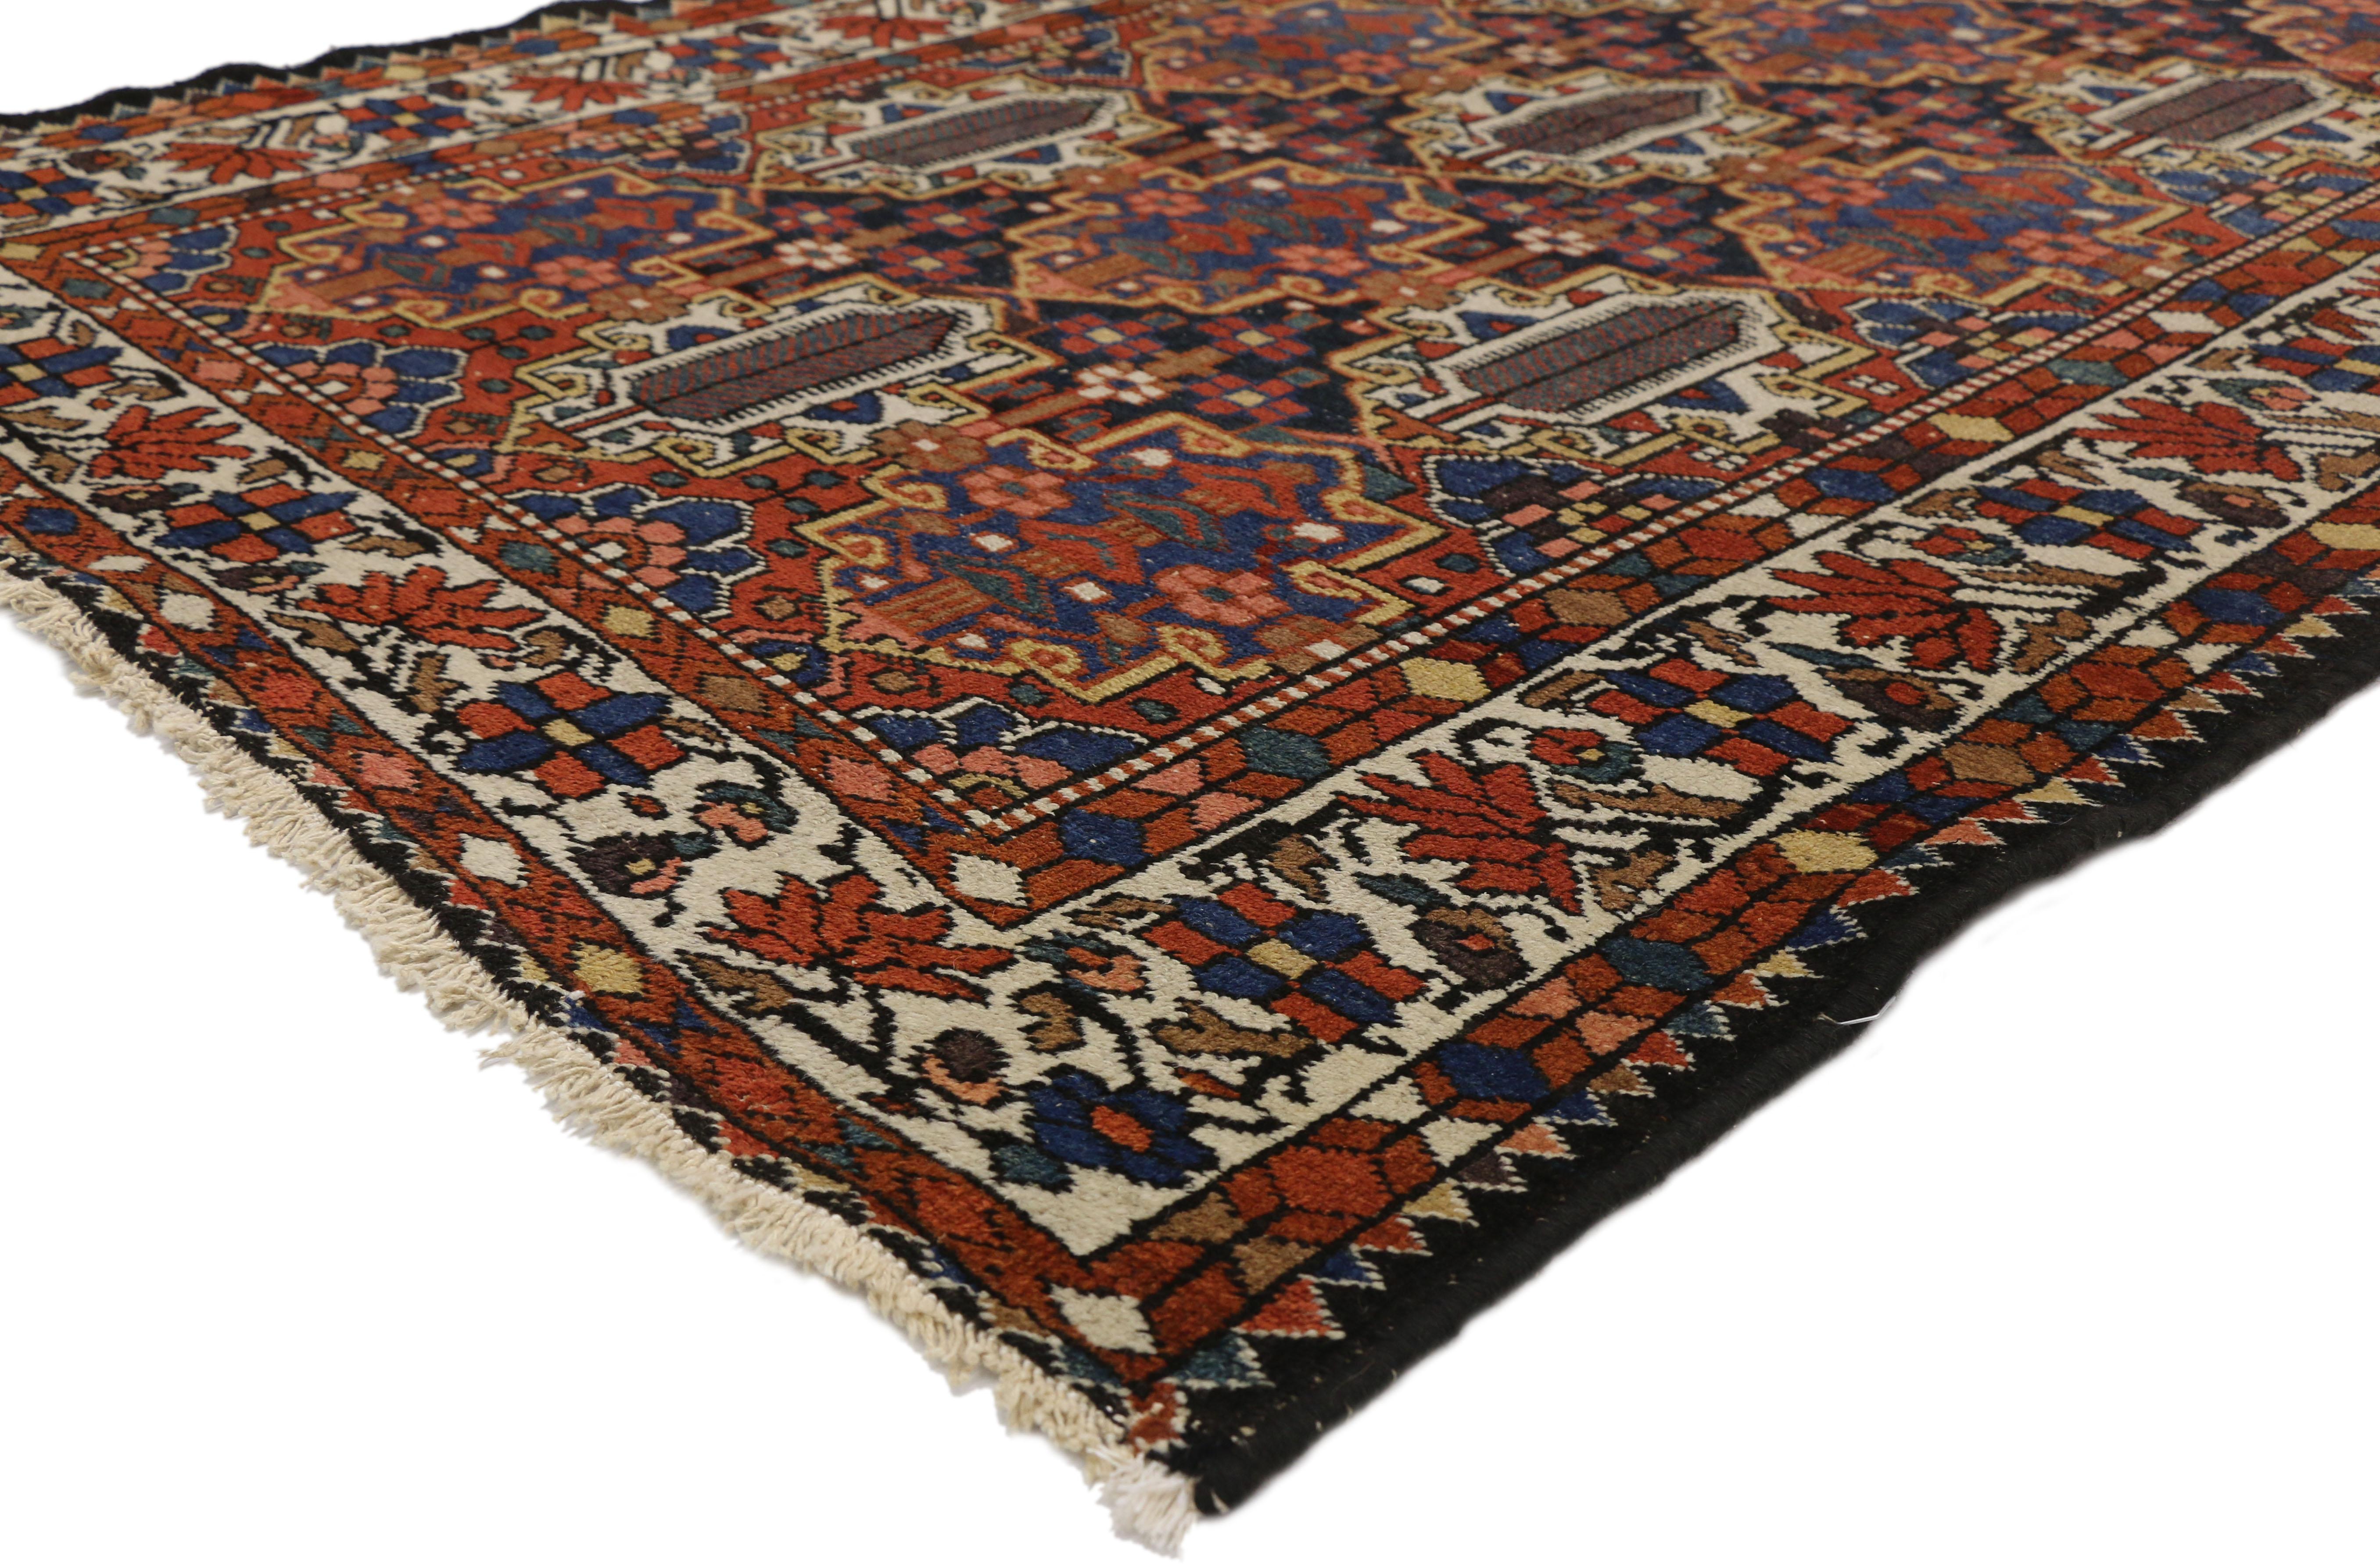 73283, antiker persischer Bakhtiari-Teppich im amerikanischen Kolonialstil. Mit einem zeitlosen botanischen Muster und naturalistischen Designelementen erhält dieser handgeknüpfte, antike persische Bachtiari-Teppich aus Wolle einen gepflegten,